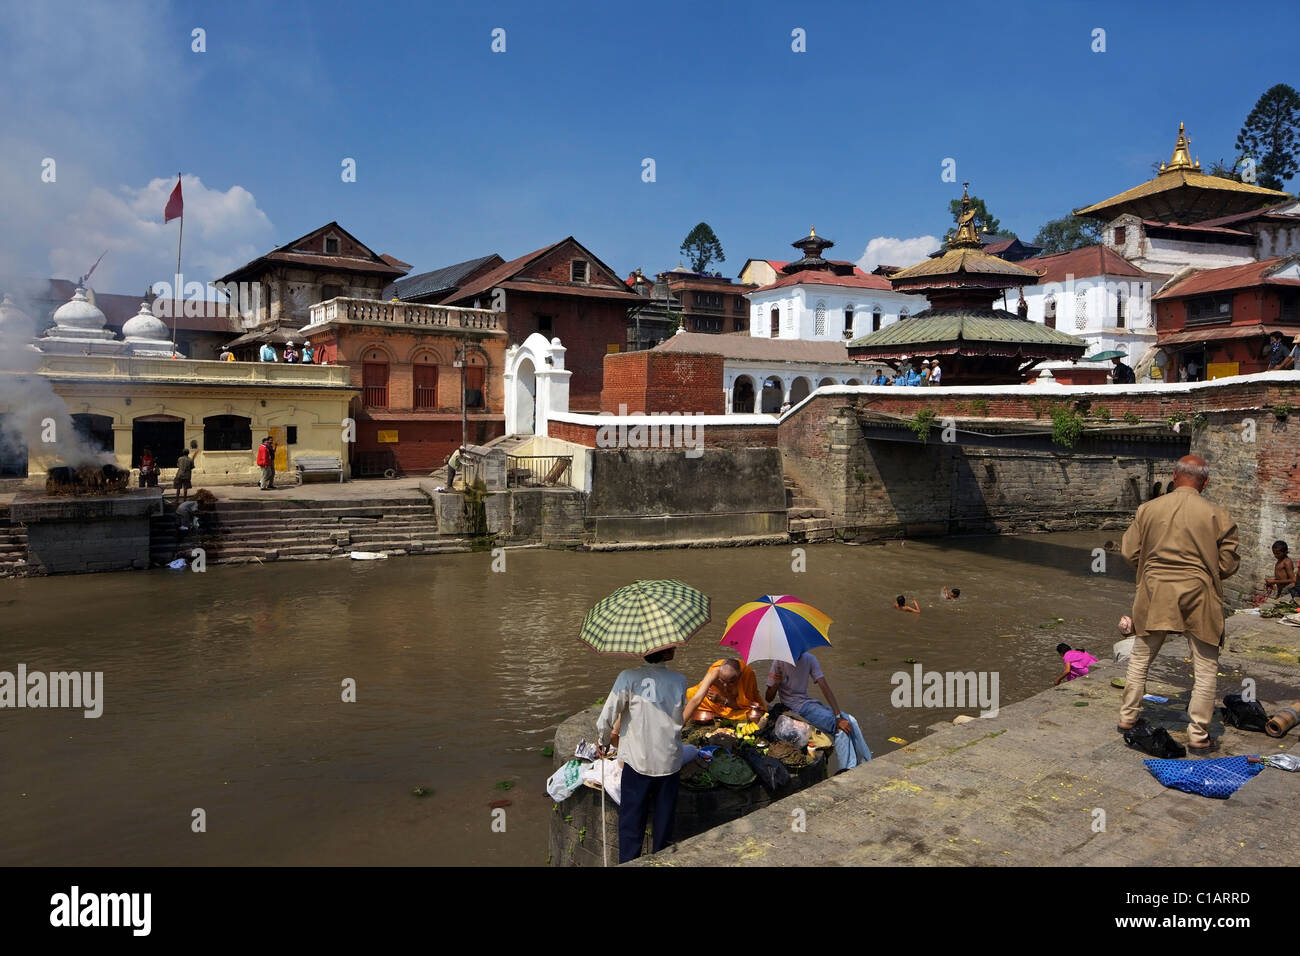 Hindu Preist Durchführung zeremonielle Riten für den verstorbenen am Pashupatinath Feuerbestattung Standort am Fluss Bagmati Kathmandu-Nepal Stockfoto